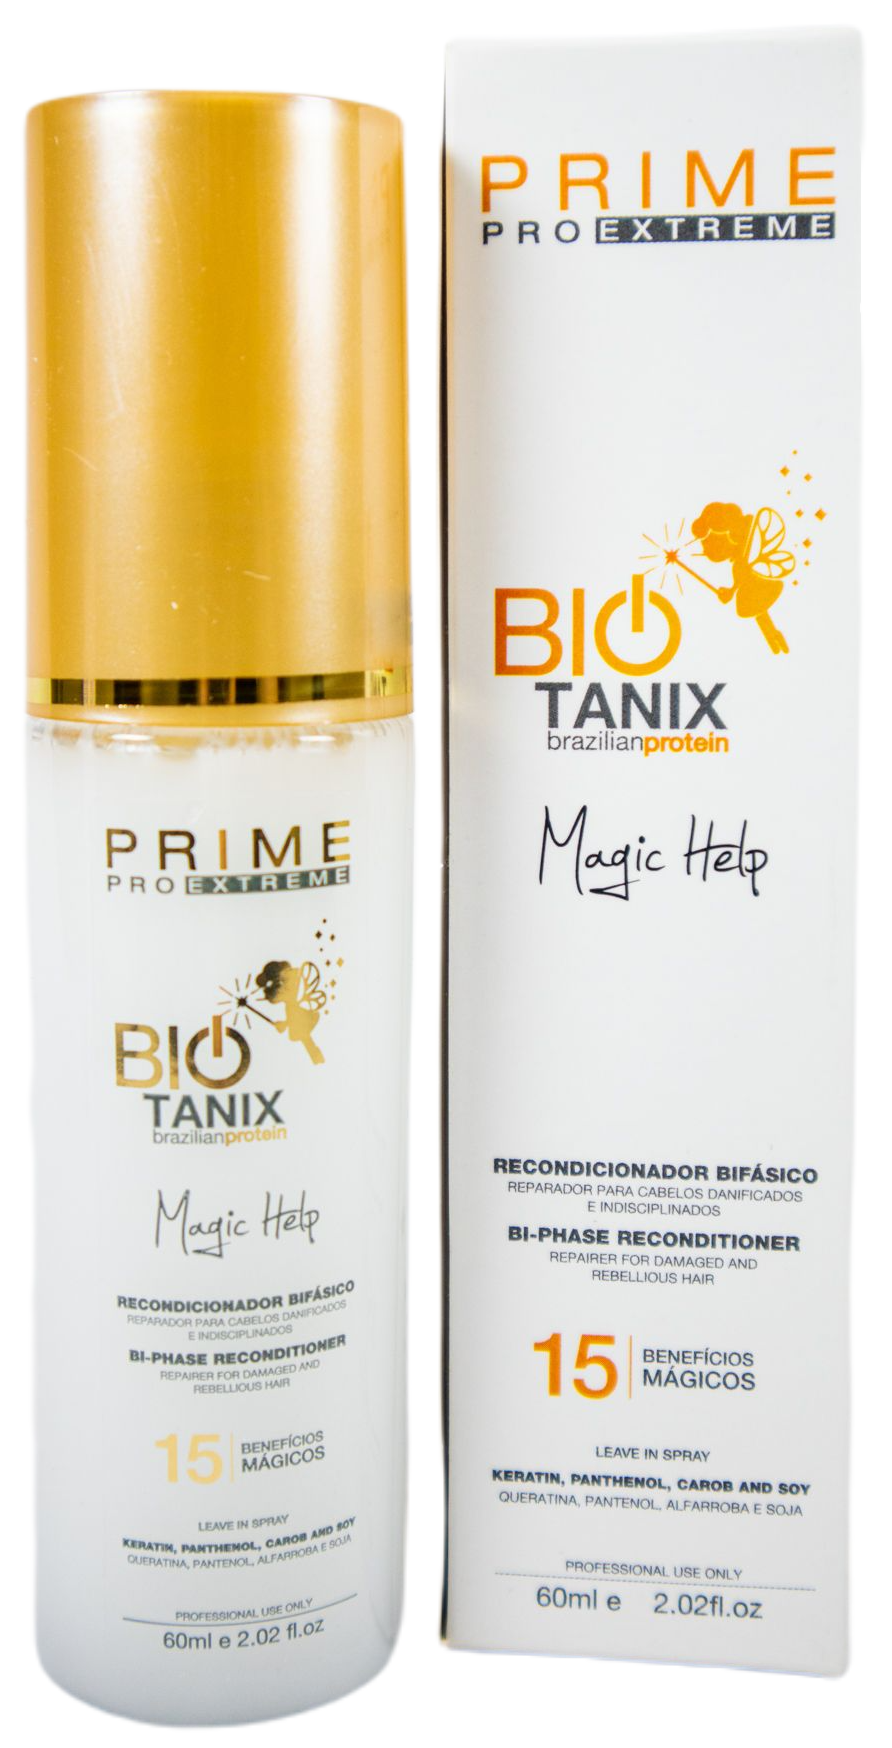 Prime Pro Extreme Hair Oil Bio Tanix Magic Help Brazilian Protein 60ml - Prime Pro